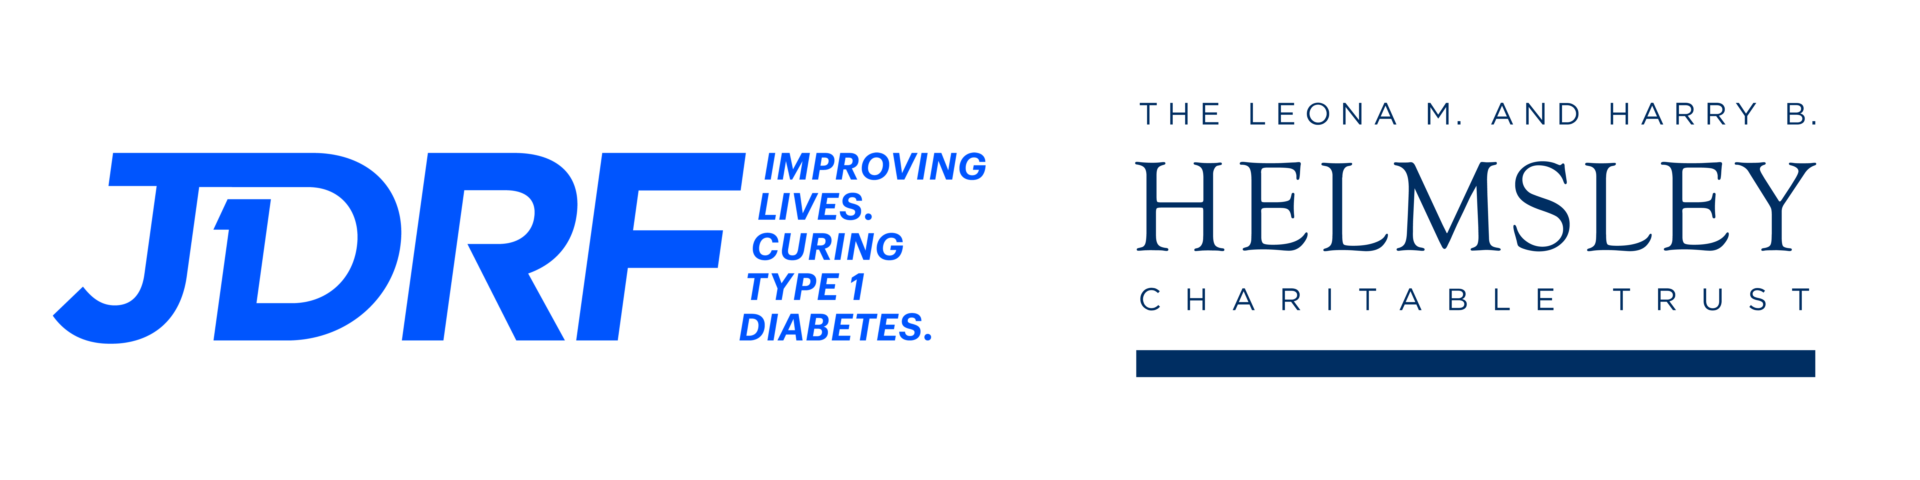 JDRF Helmsley Logo Horizontal